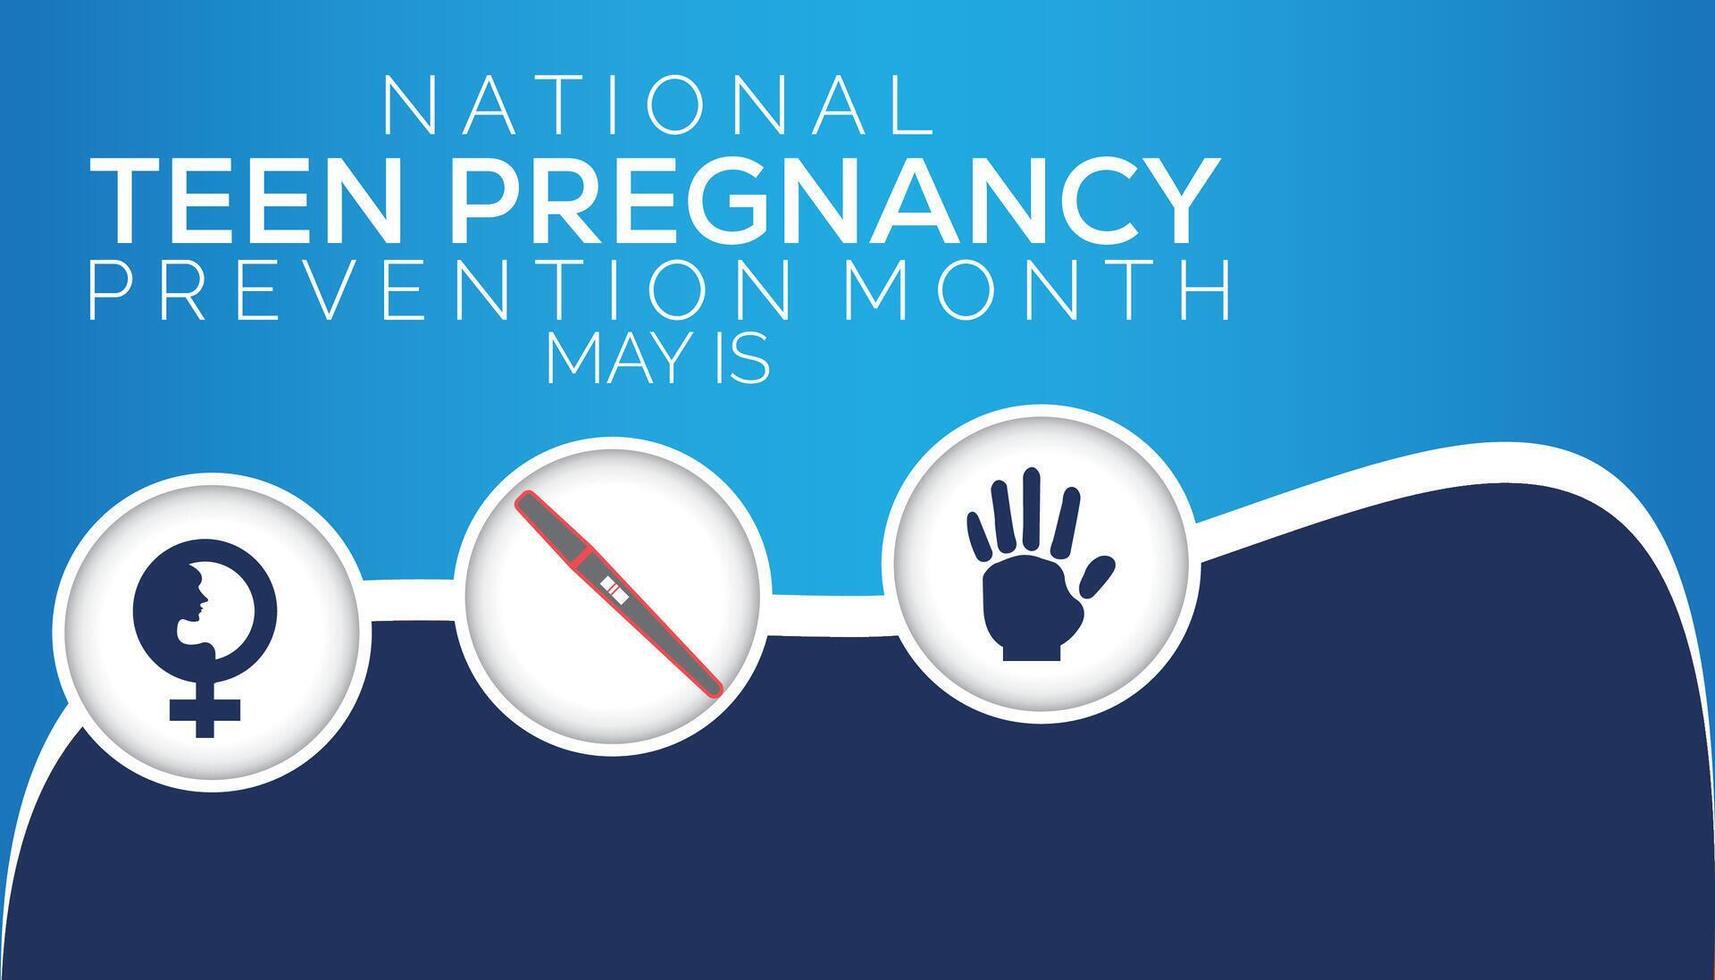 National Teen Schwangerschaft Verhütung Monat beobachtete jeder Jahr im dürfen. Vorlage zum Hintergrund, Banner, Karte, Poster mit Text Inschrift. vektor